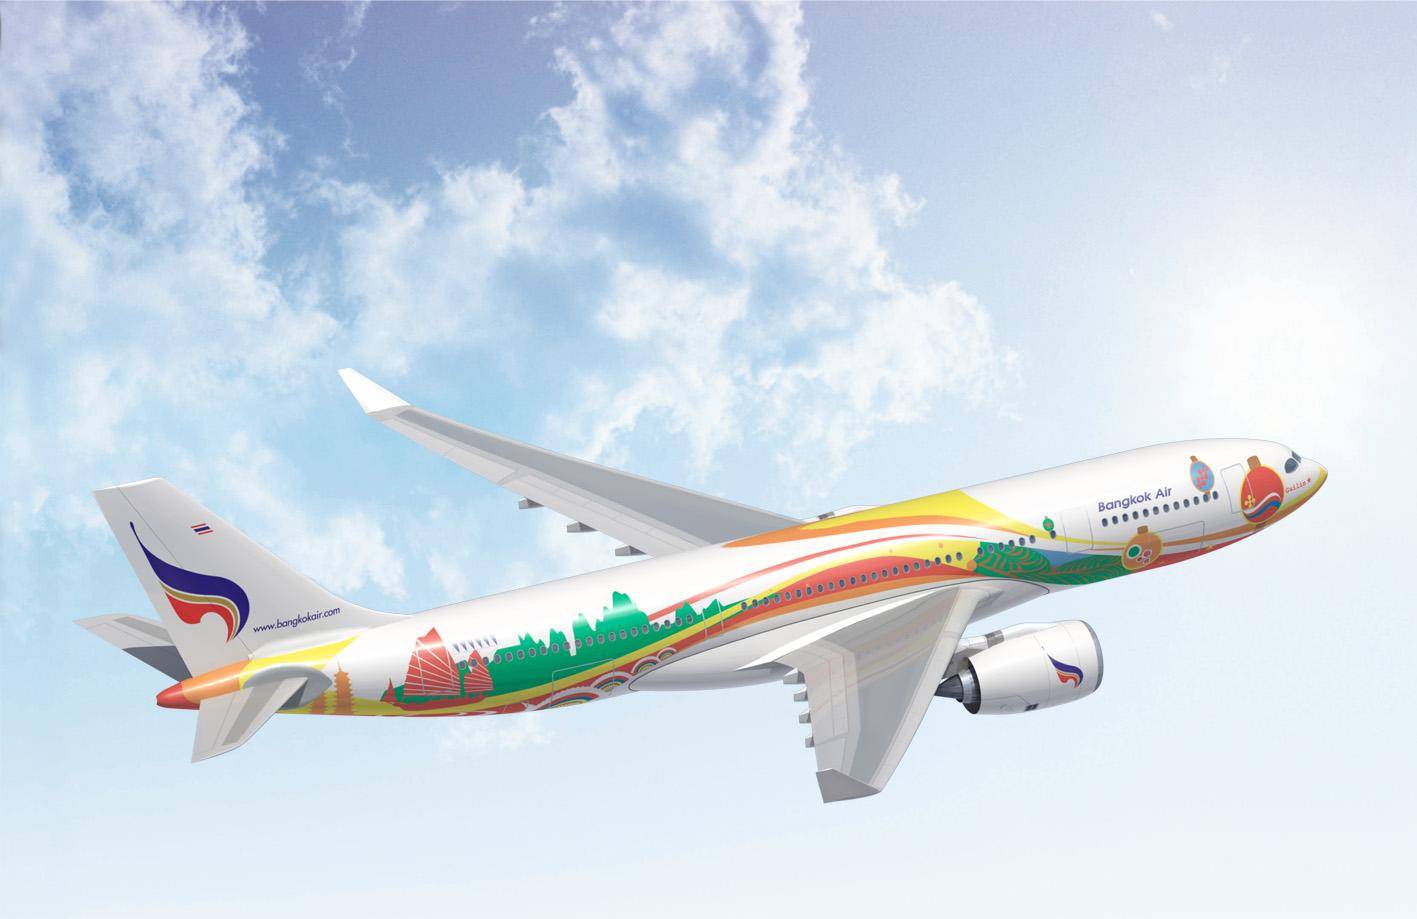 Бангкок эйрвэйз - отзывы пассажиров 2017-2018 про авиакомпанию bangkok airways